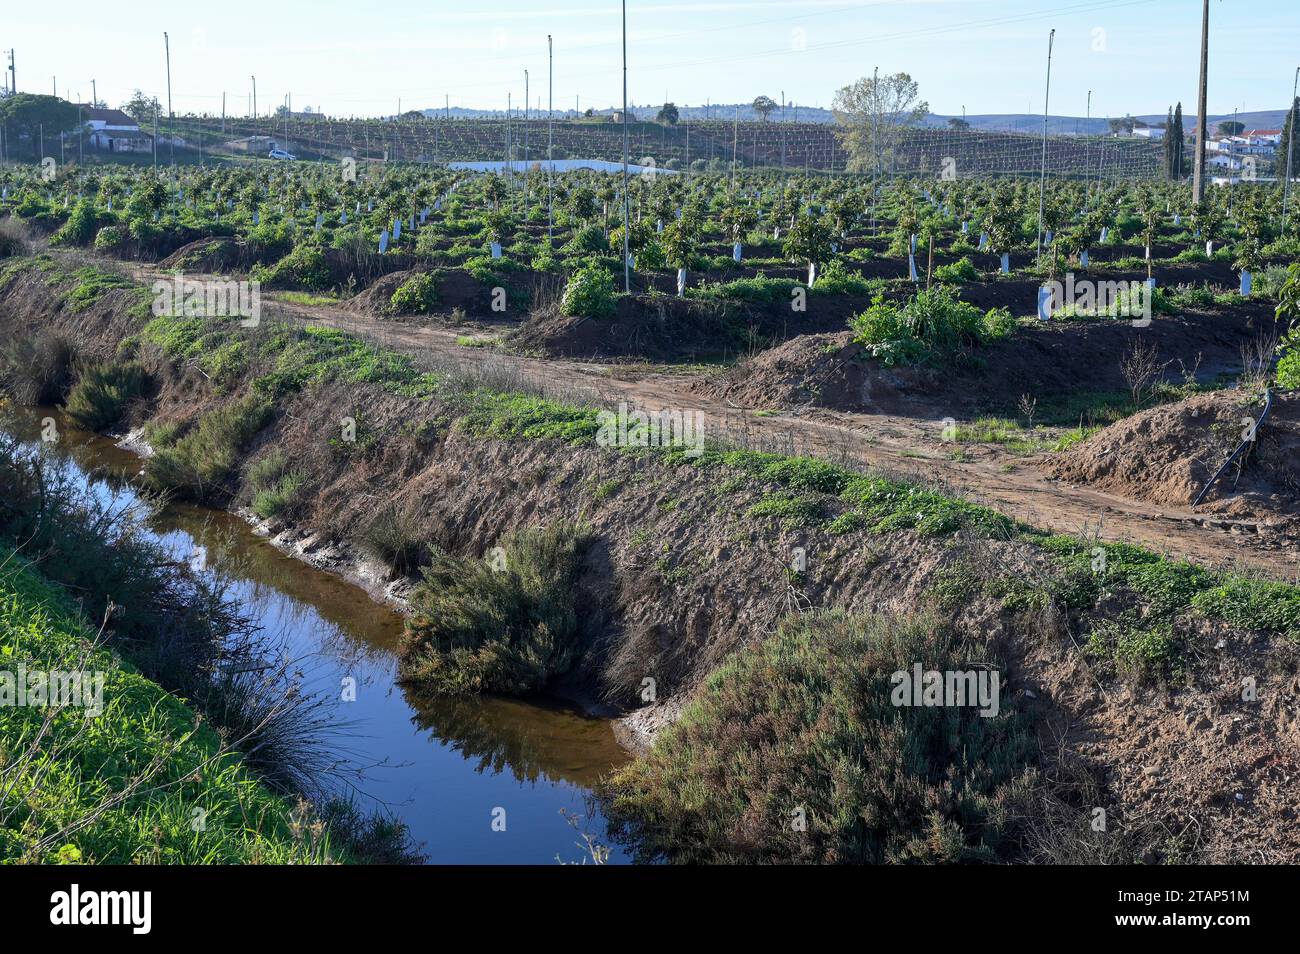 PORTUGAL, Algarve, Lagos, Avocado-Baumplantage mit Tropf- und Regenerationsbewässerung, Avocado-Landwirtschaft benötigt viel Wasser für die Bewässerung / Avocado Anbau mit Sprenger- und Tröpfchenbewässerung , für die Bewaesserung wird viel Wasser verbraucht Stockfoto